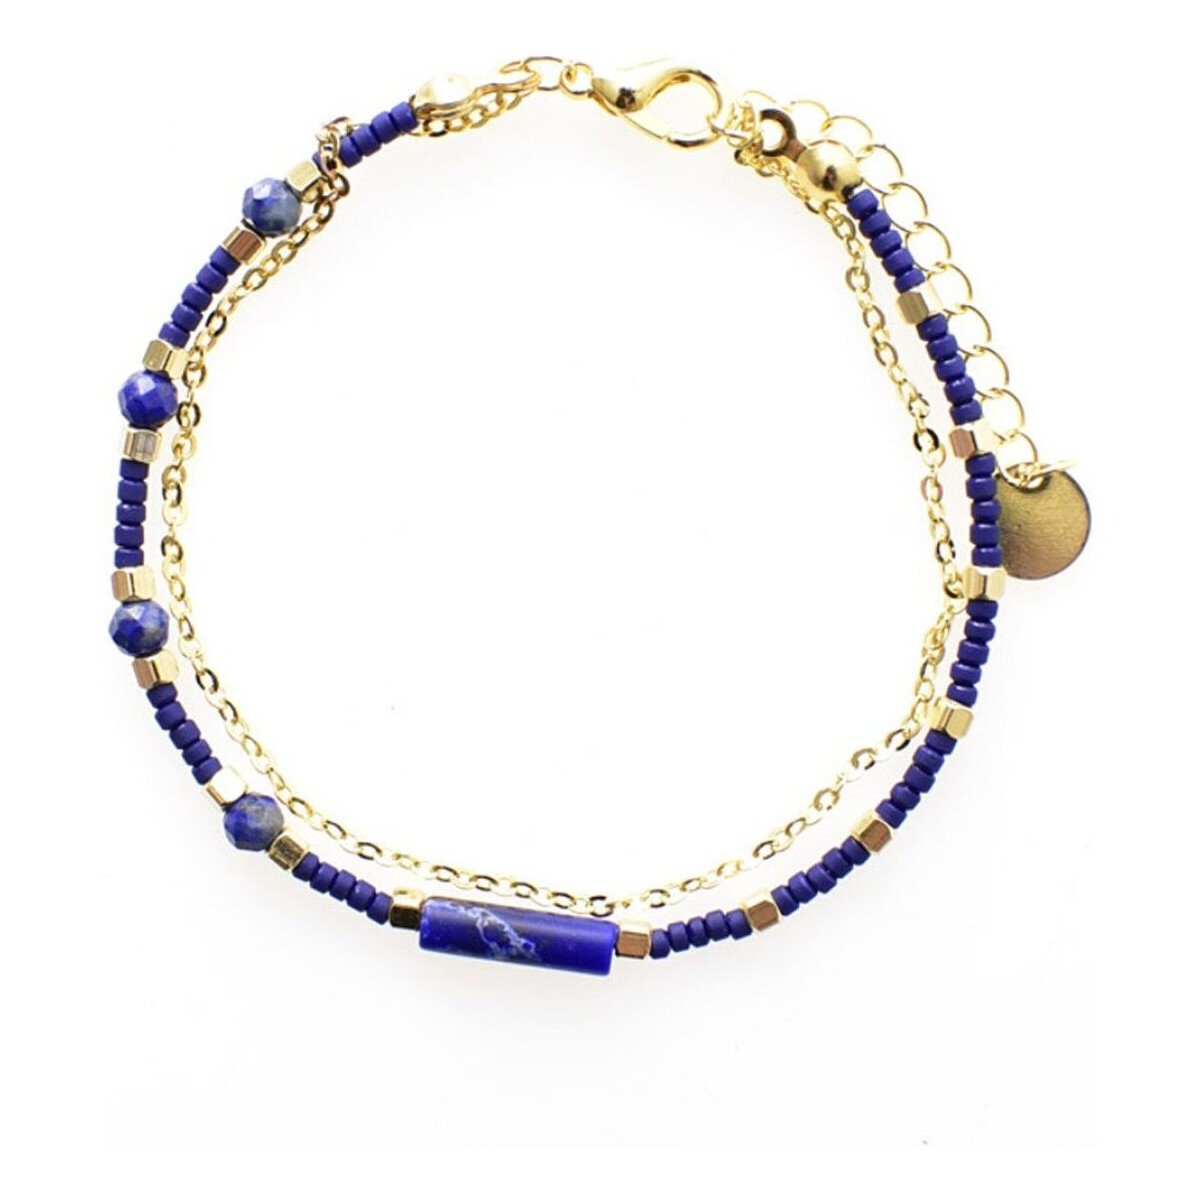 Relógios & jóias Mulher Relógio L'atelier De Gaspard A16 Perle Azul